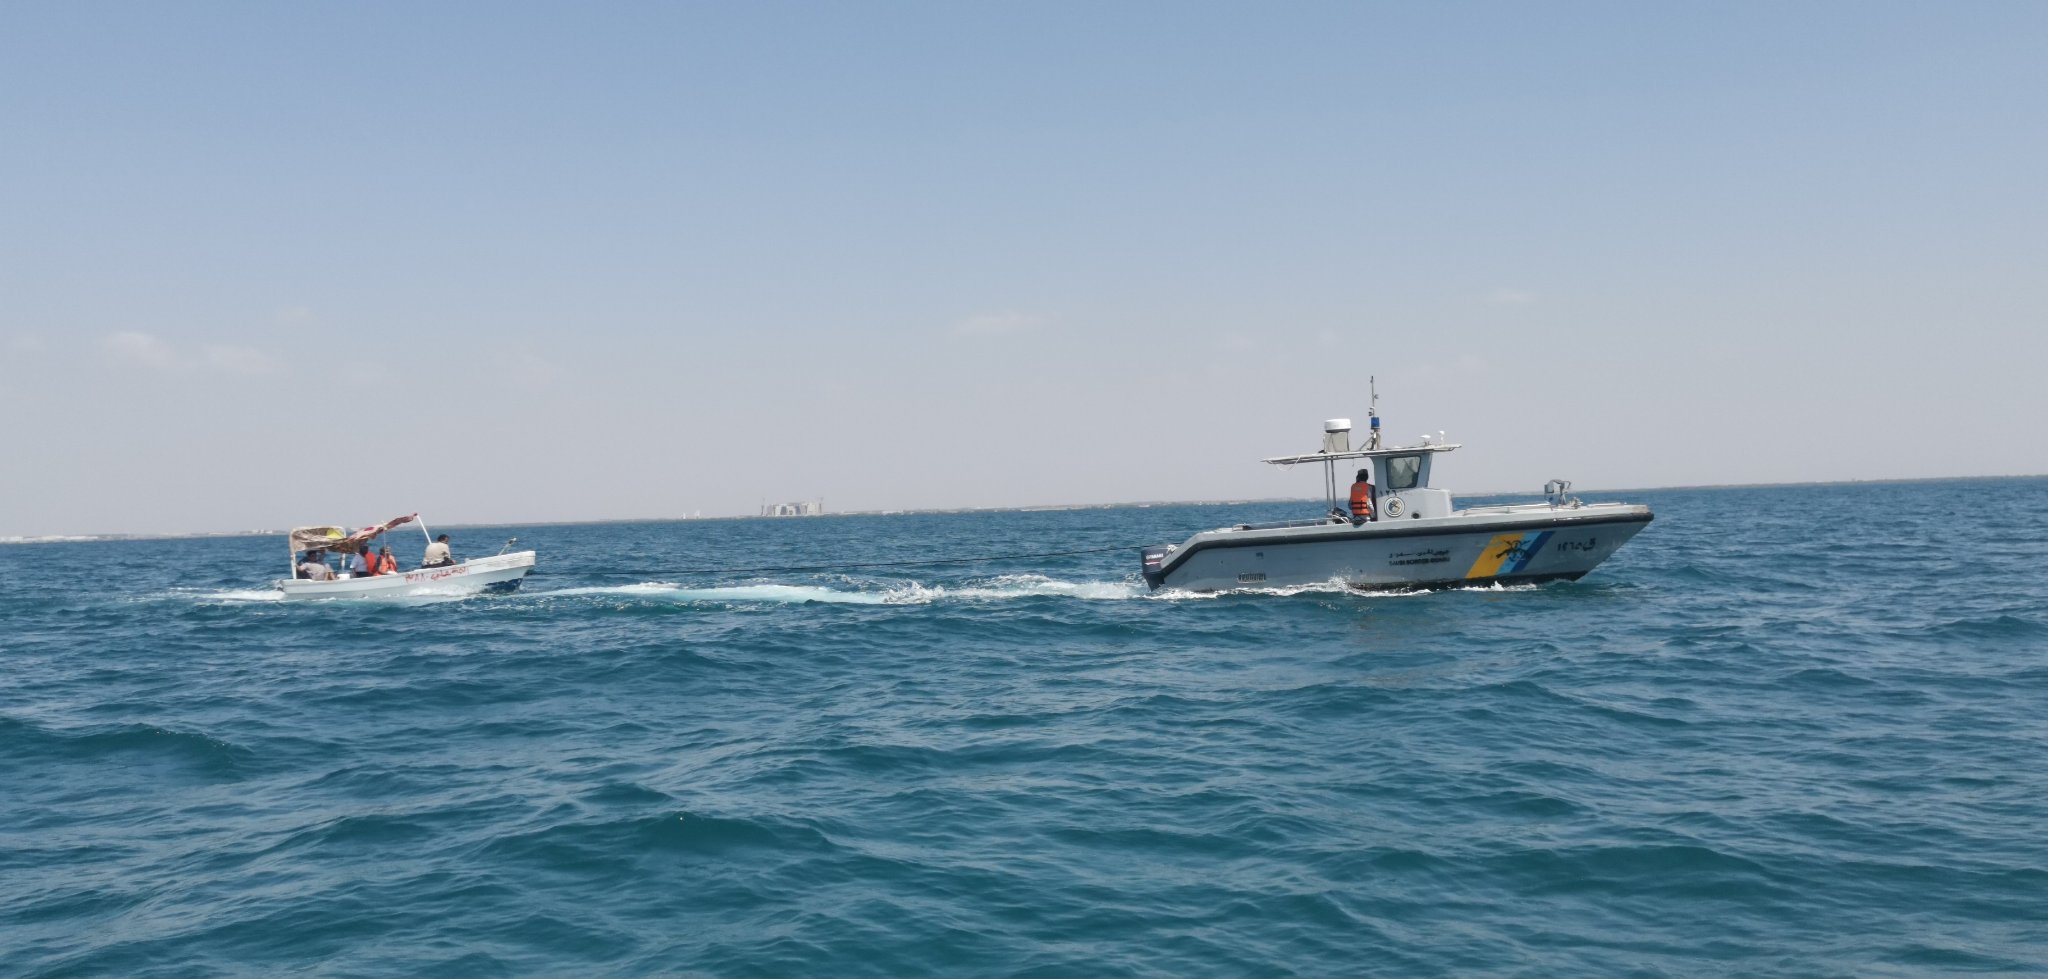 حرس الحدود ينقذ مواطنين تعطل قاربهما في عرض البحر بالقنفذة  - المواطن